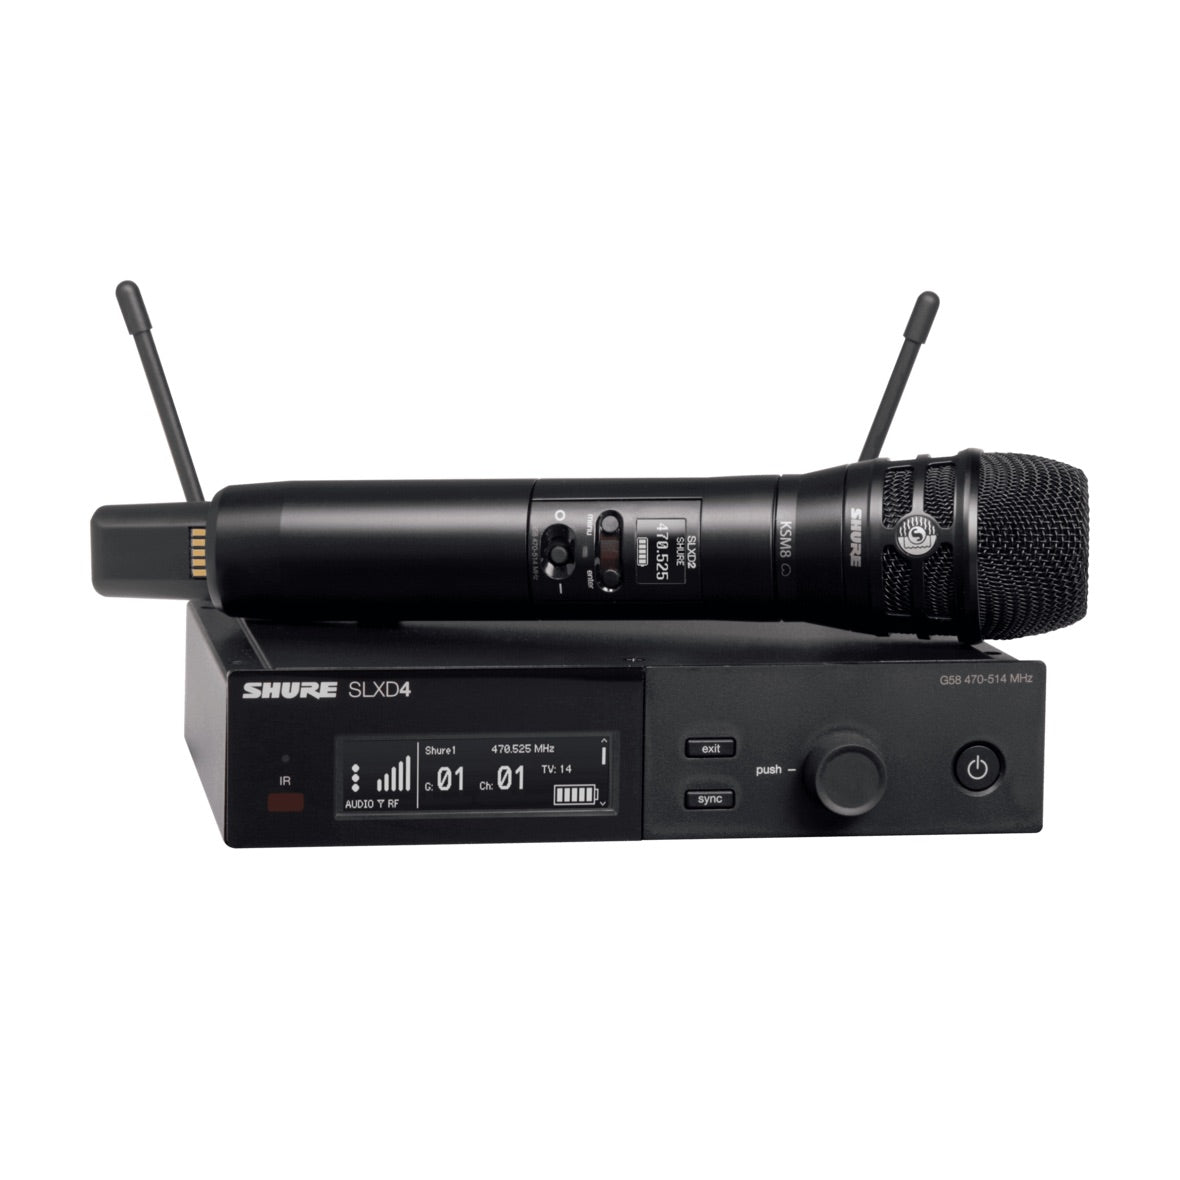 Shure SLXD24/K8B - Wireless System with KSM8 Dualdyne Handheld Transmitter